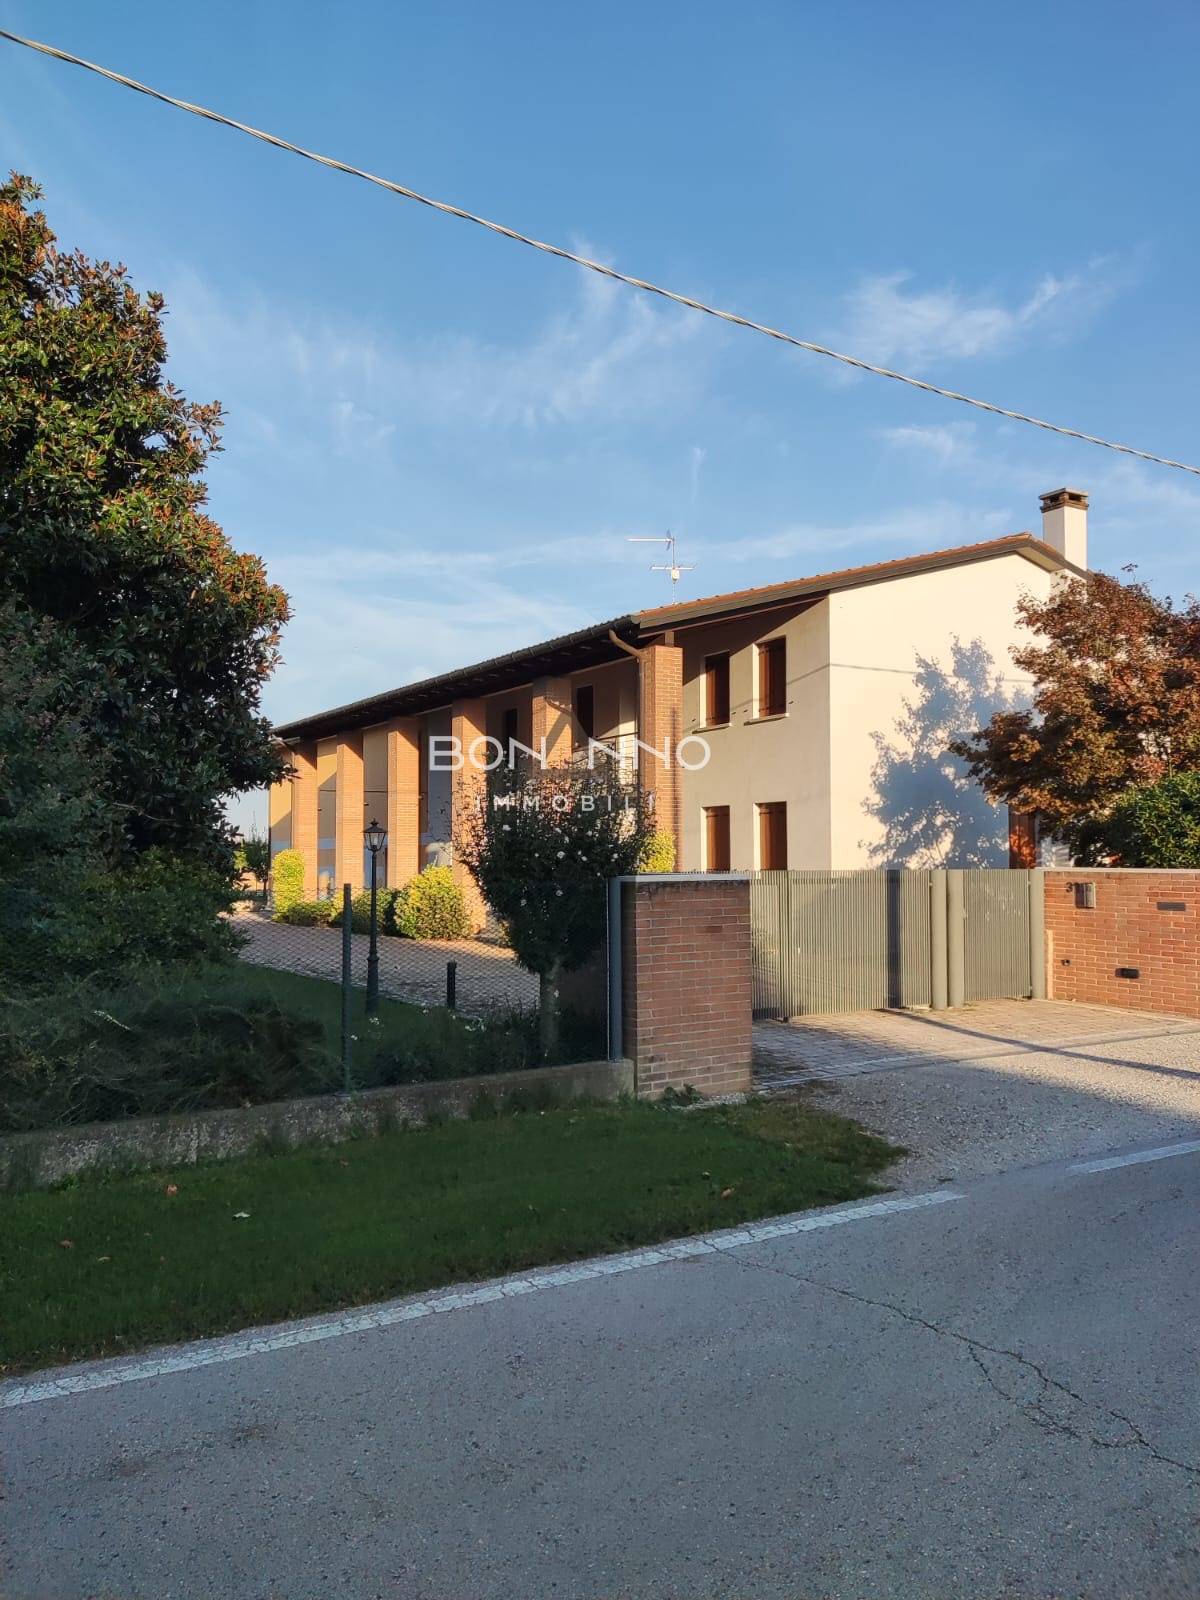 Villa in vendita a Camposampiero, 8 locali, zona ega, prezzo € 499.000 | PortaleAgenzieImmobiliari.it